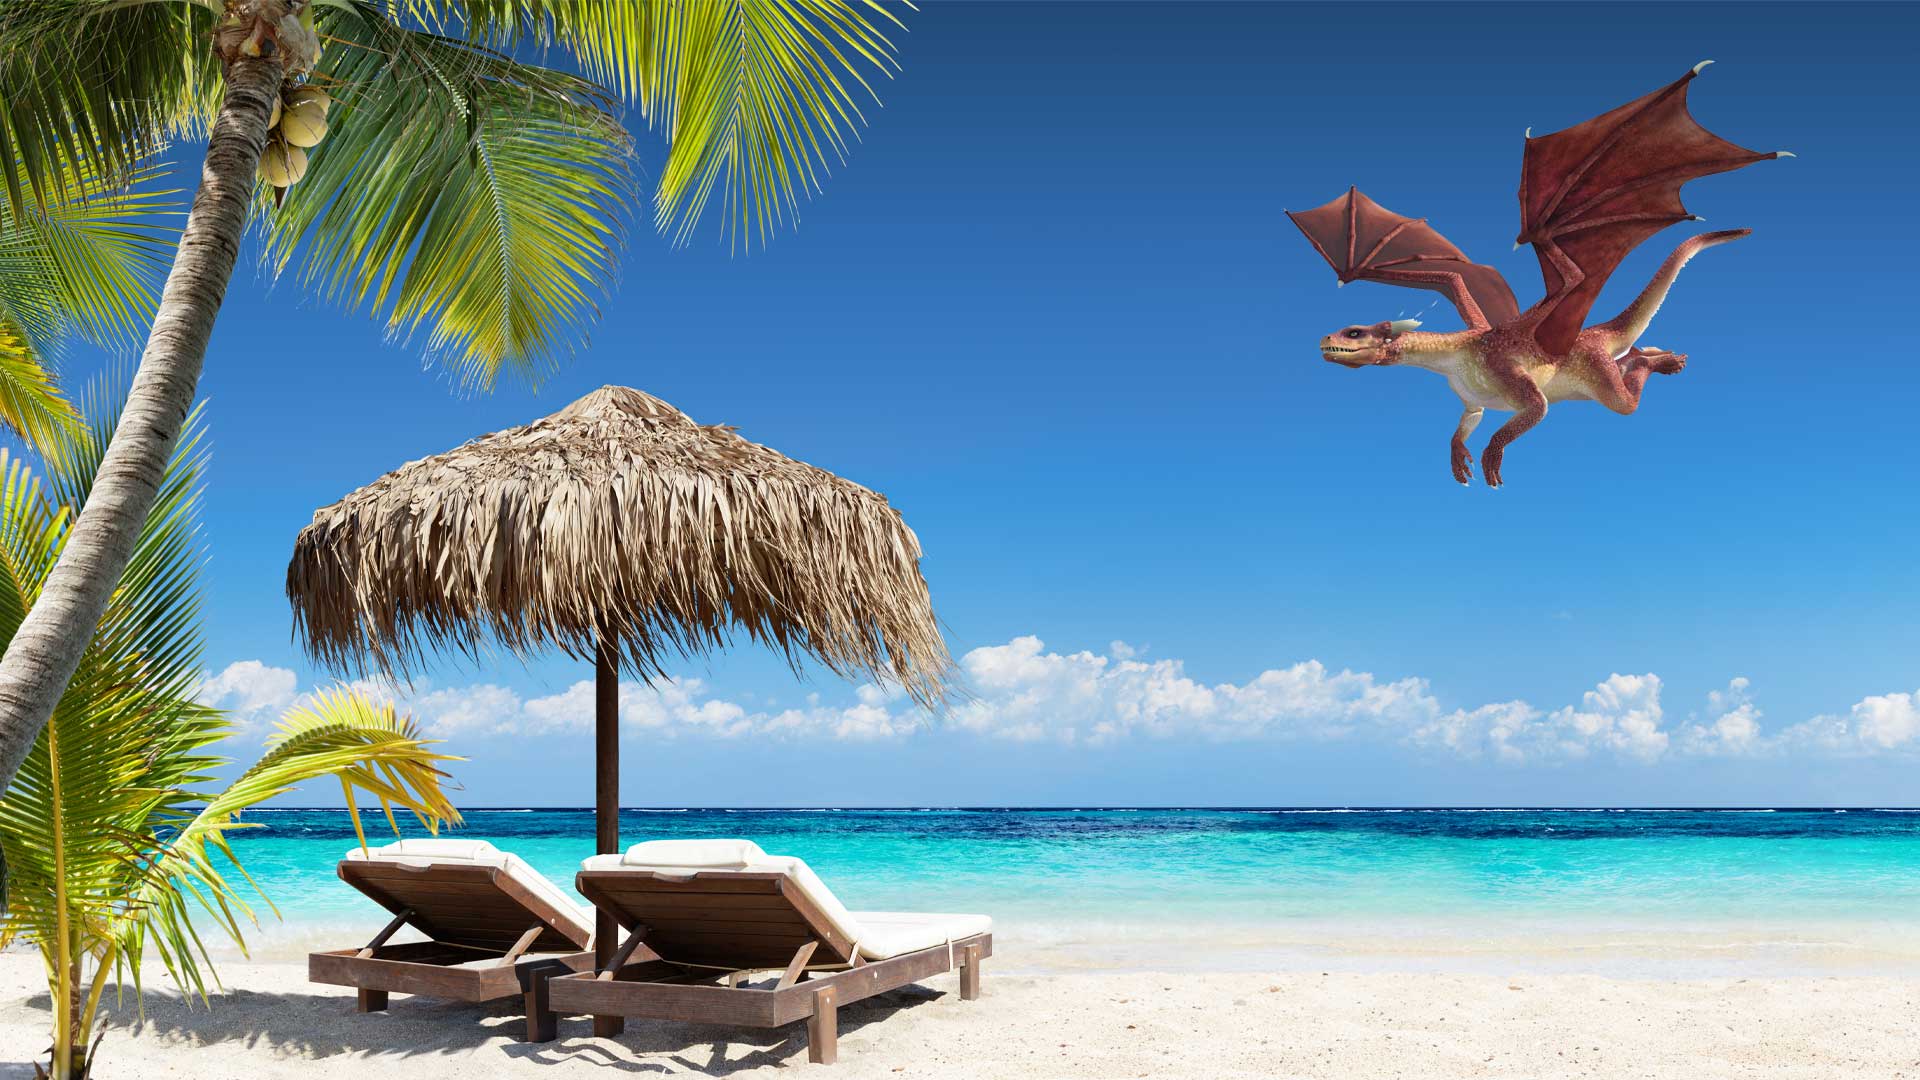 A dragon flying over a sandy beach